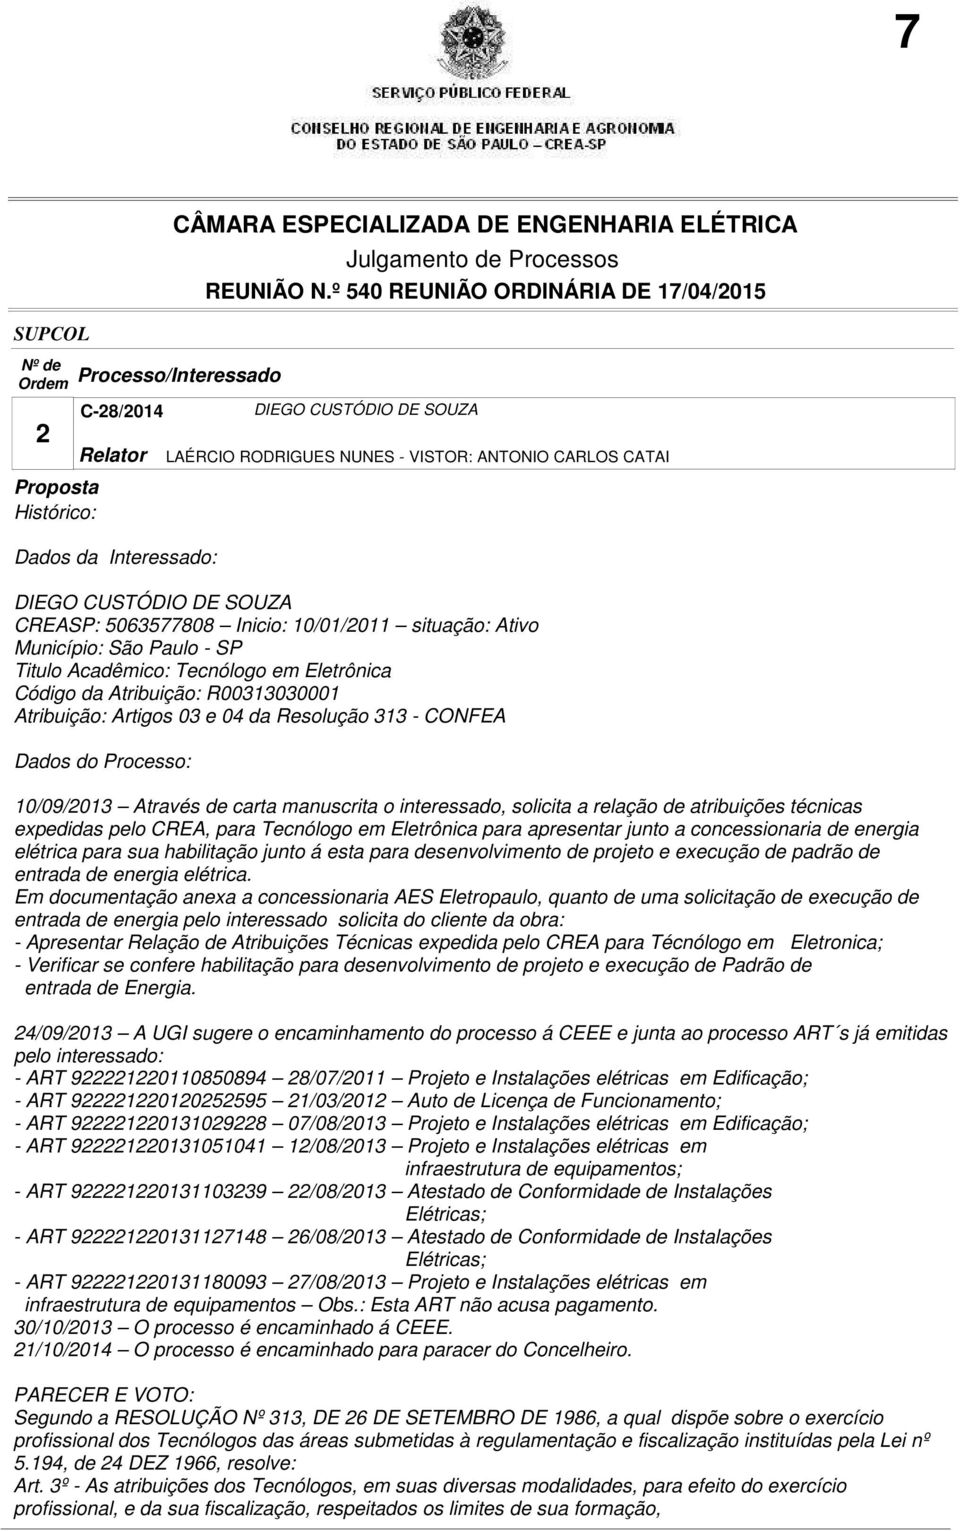 NUNES - VISTOR: ANTONIO CARLOS CATAI 10/09/2013 Através de carta manuscrita o interessado, solicita a relação de atribuições técnicas expedidas pelo CREA, para Tecnólogo em Eletrônica para apresentar